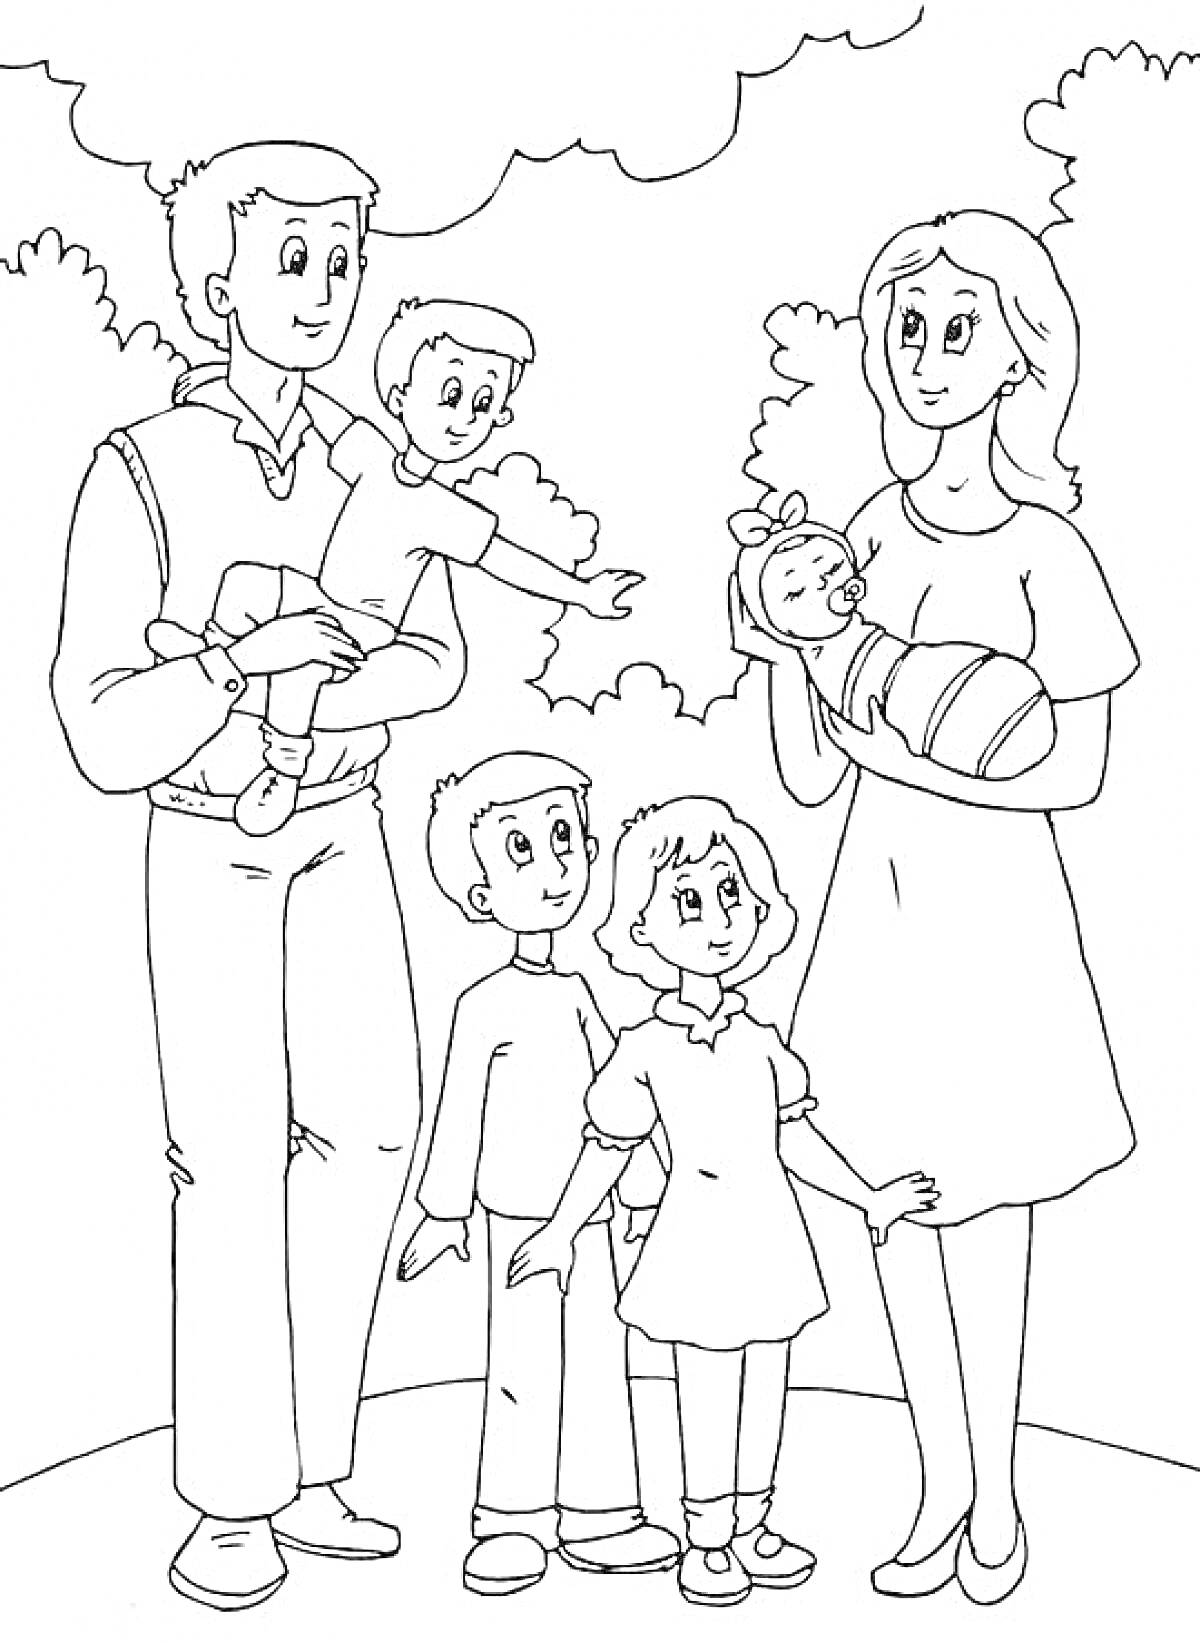 Раскраска Родители с тремя детьми на природе (мальчик на руках у папы, мать с младенцем на руках и два ребенка - мальчик и девочка - стоят впереди).